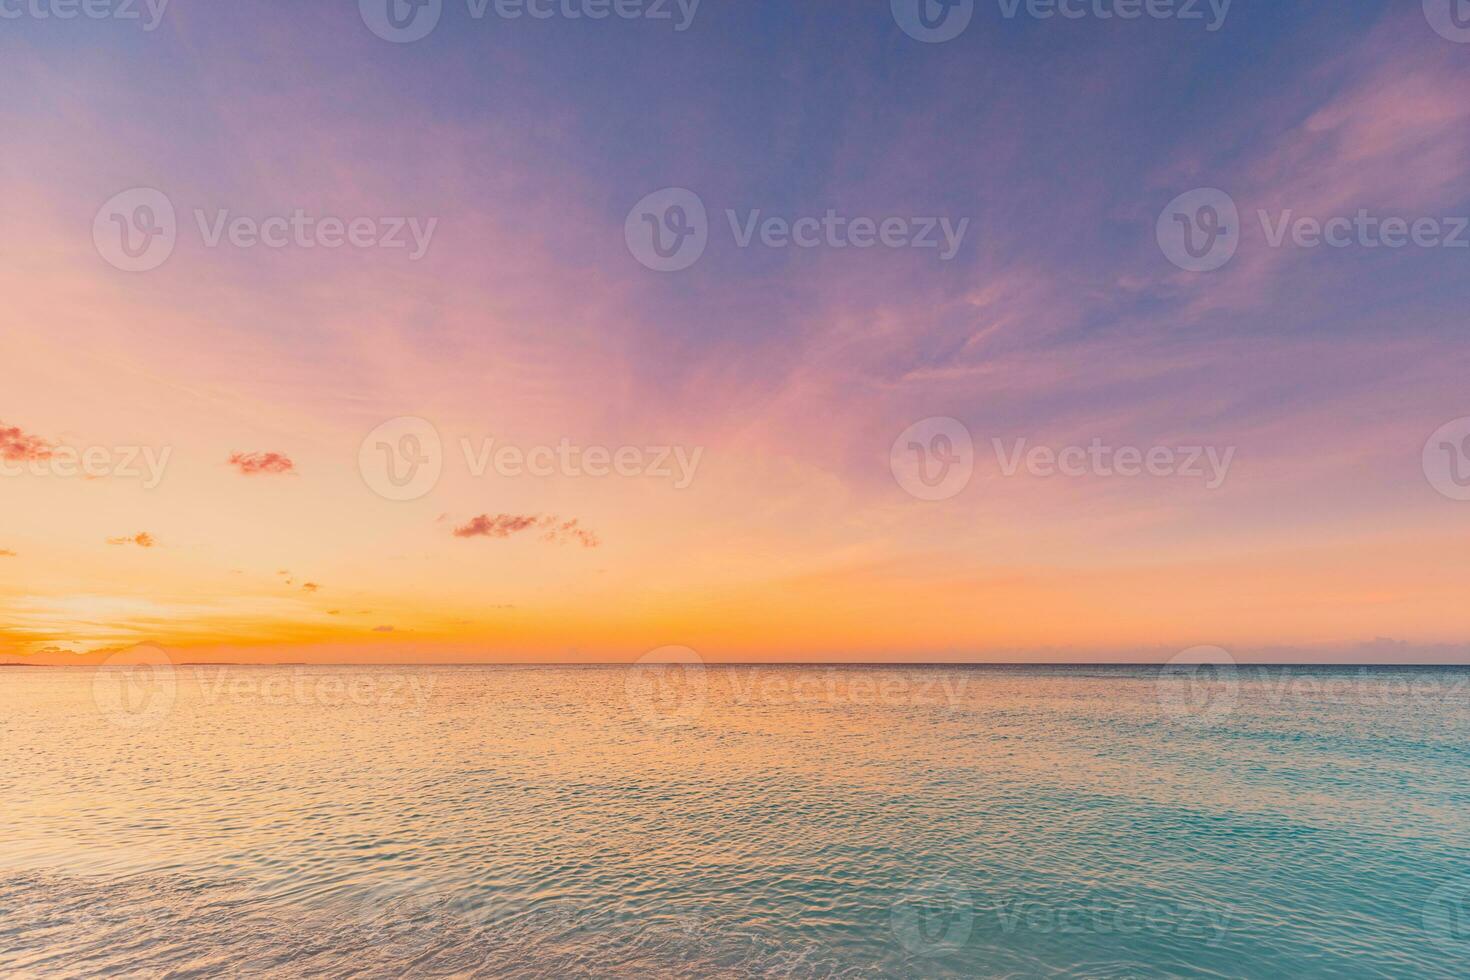 close-up zee zandstrand. panoramisch strandlandschap. inspireren tropische strand zeegezicht horizon. oranje en gouden zonsondergang hemel kalmte rustig ontspannen zonlicht zomerstemming. vakantie reizen vakantie banner foto